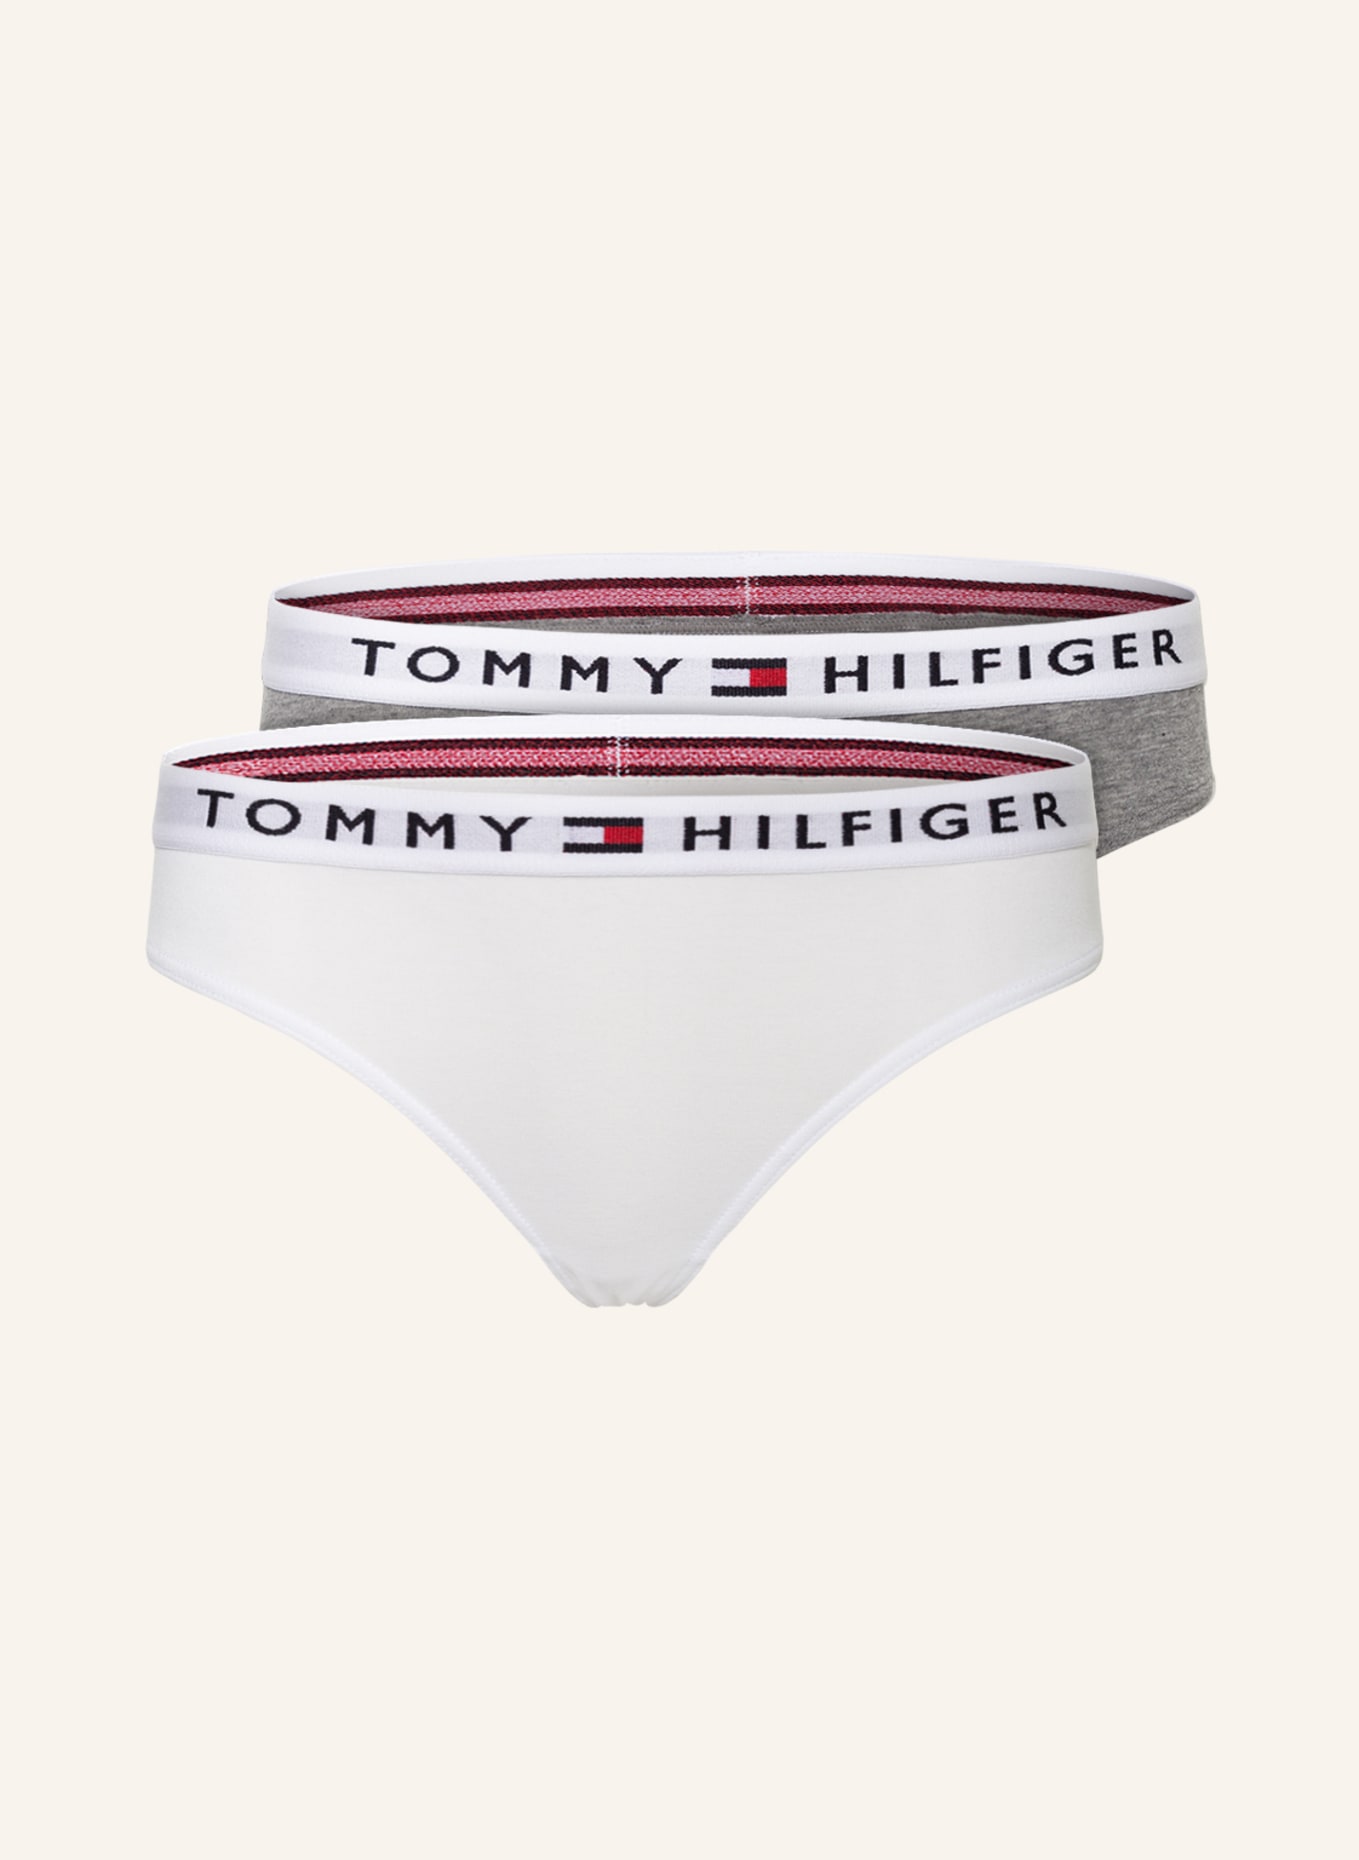 TOMMY HILFIGER 2er-Pack Slips, Farbe: WEISS/ GRAU (Bild 1)